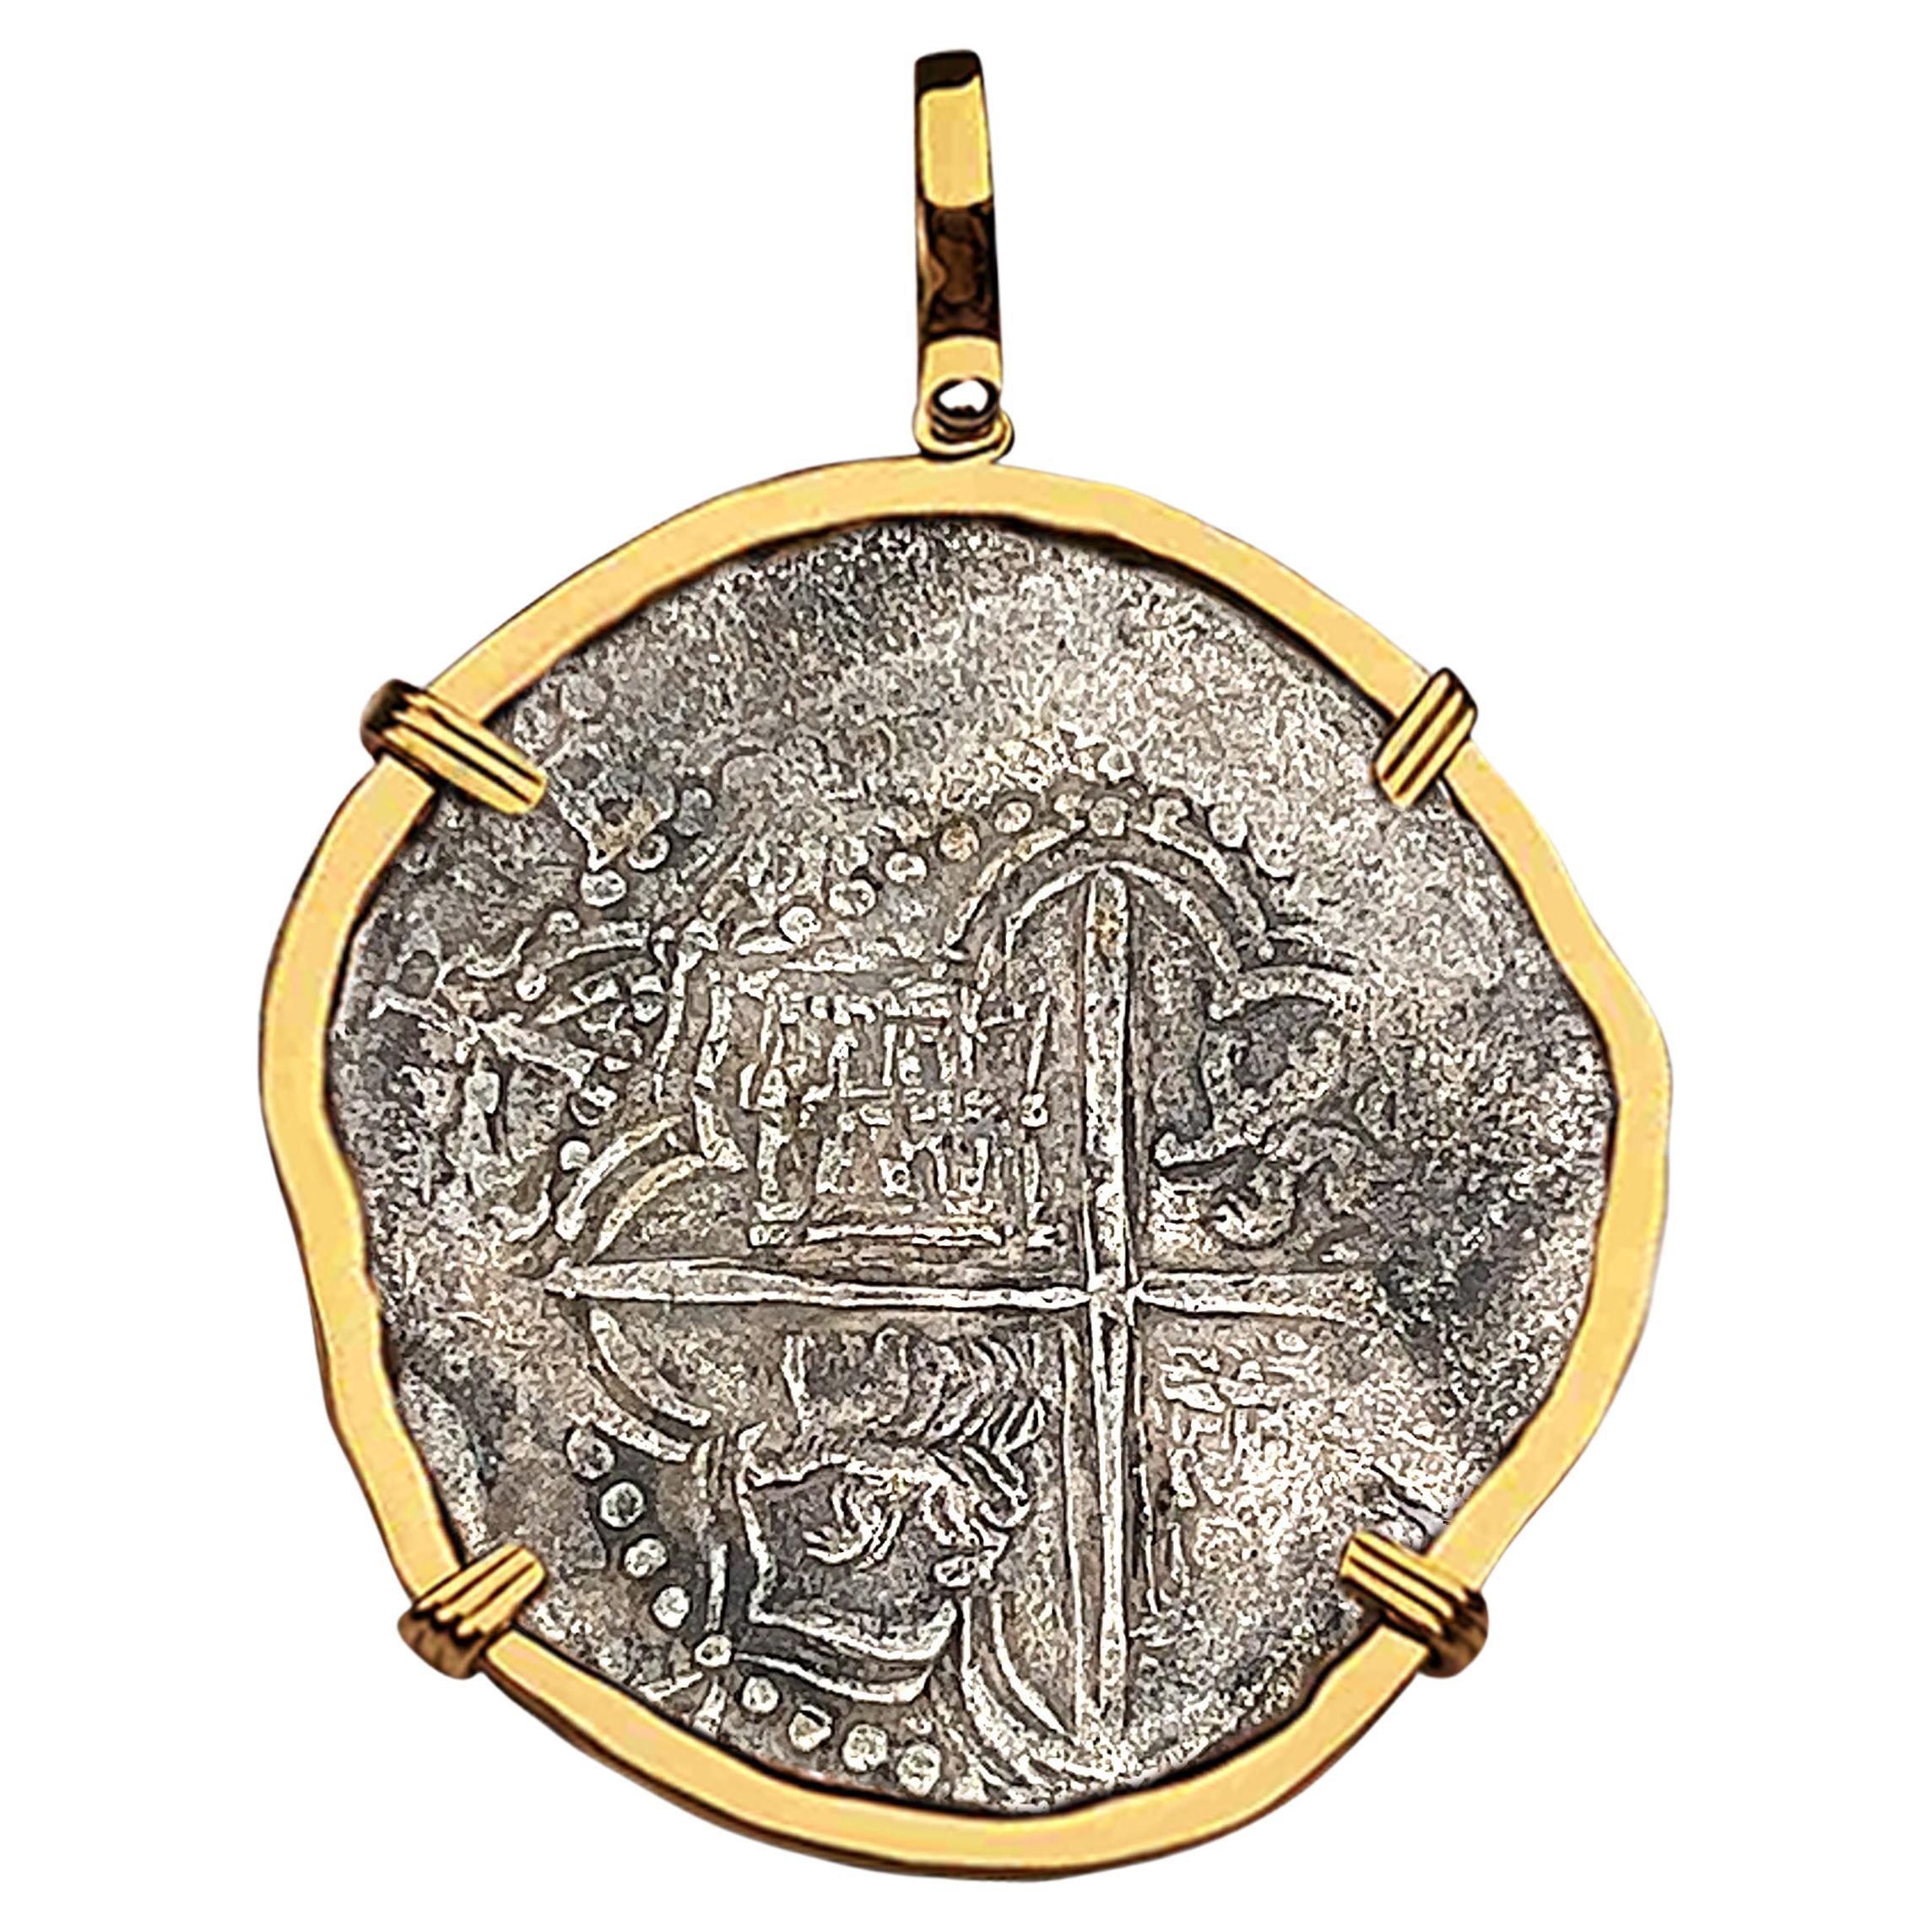 Atocha Shipwreck 8 Reale Grade 1 Assayer Q Coin and Gold Pendant For Sale